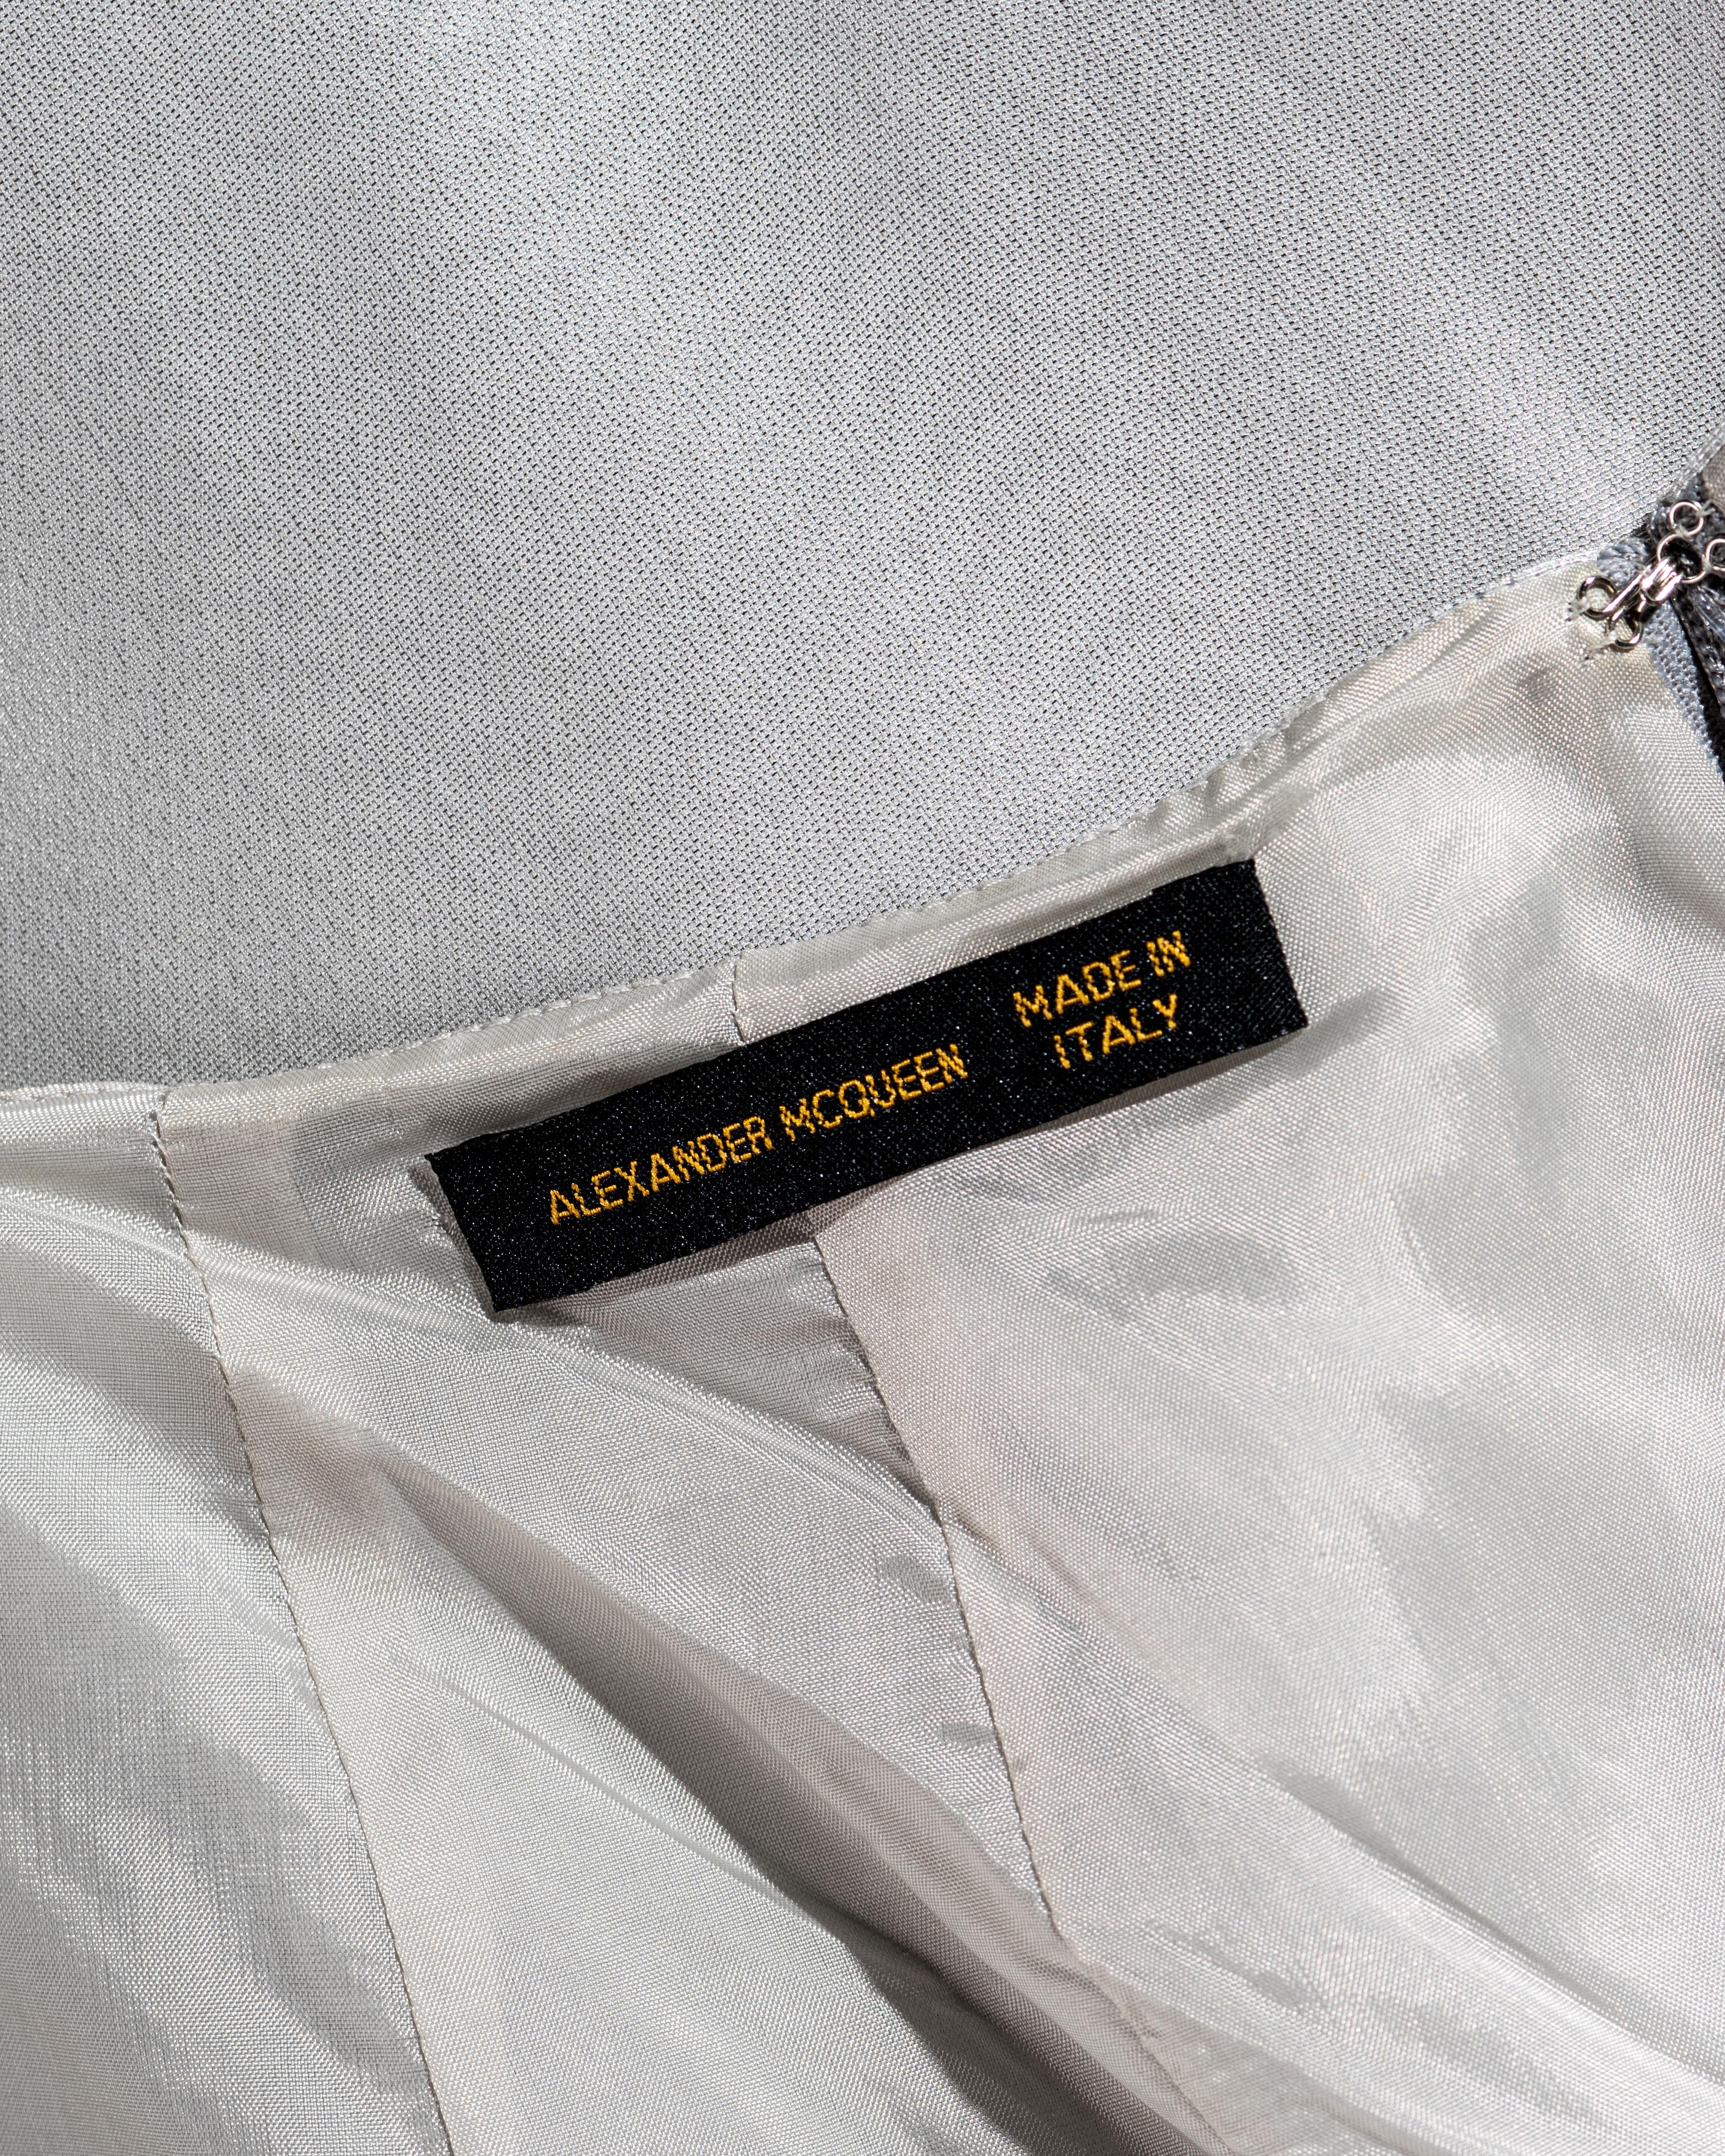 Alexander McQueen metallic silver silk lamé open-back evening dress, ss 1997 For Sale 6